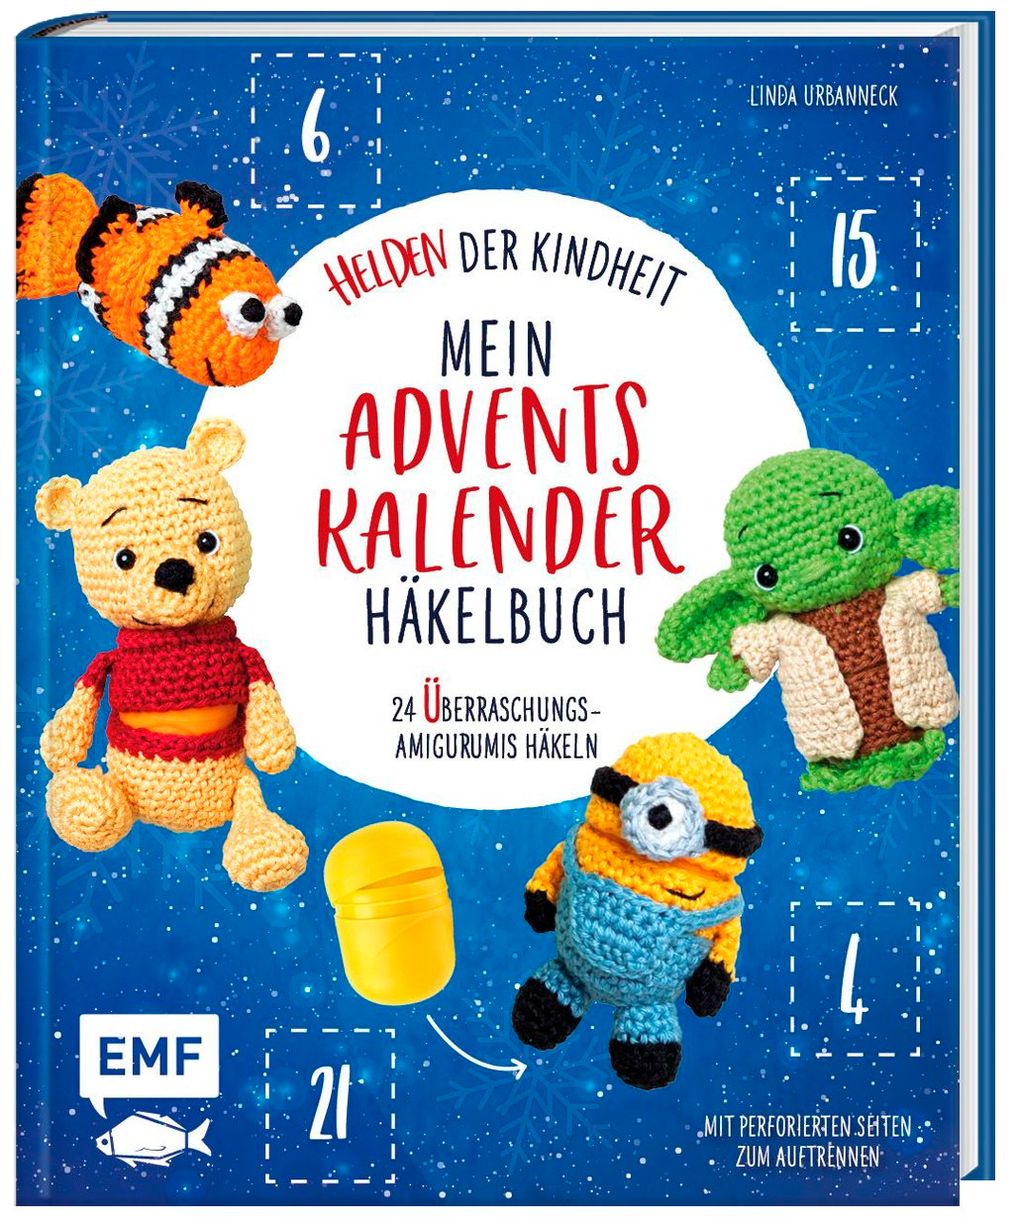 Mein Adventskalender-Häkelbuch: Helden der Kindheit | Weltbild.at